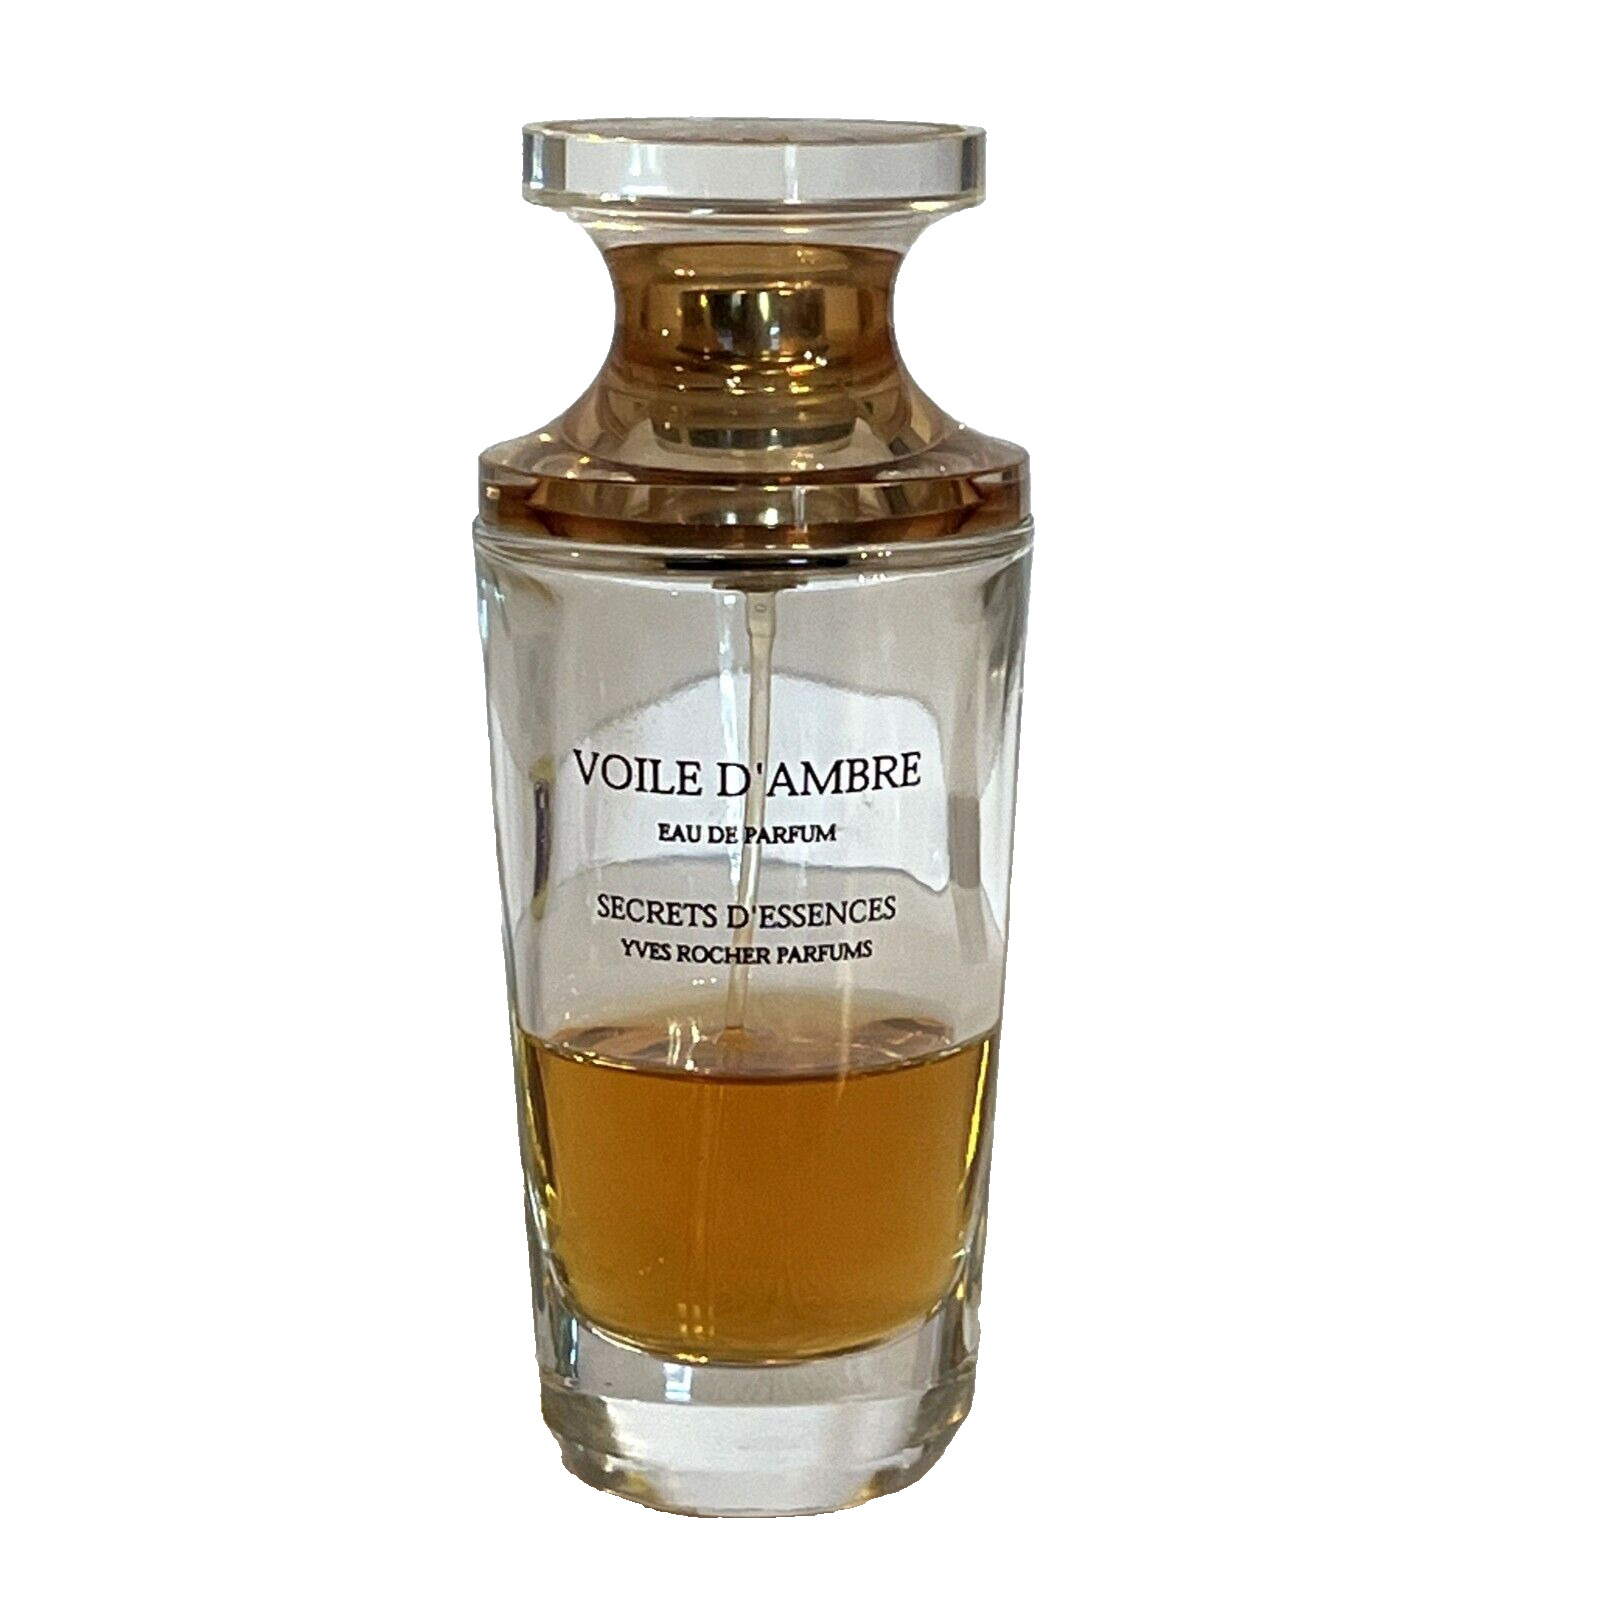 Voile D' Ambre Secrets D' Essences Eau De Parfum Yves Rocher 35% Full 1.7oz READ